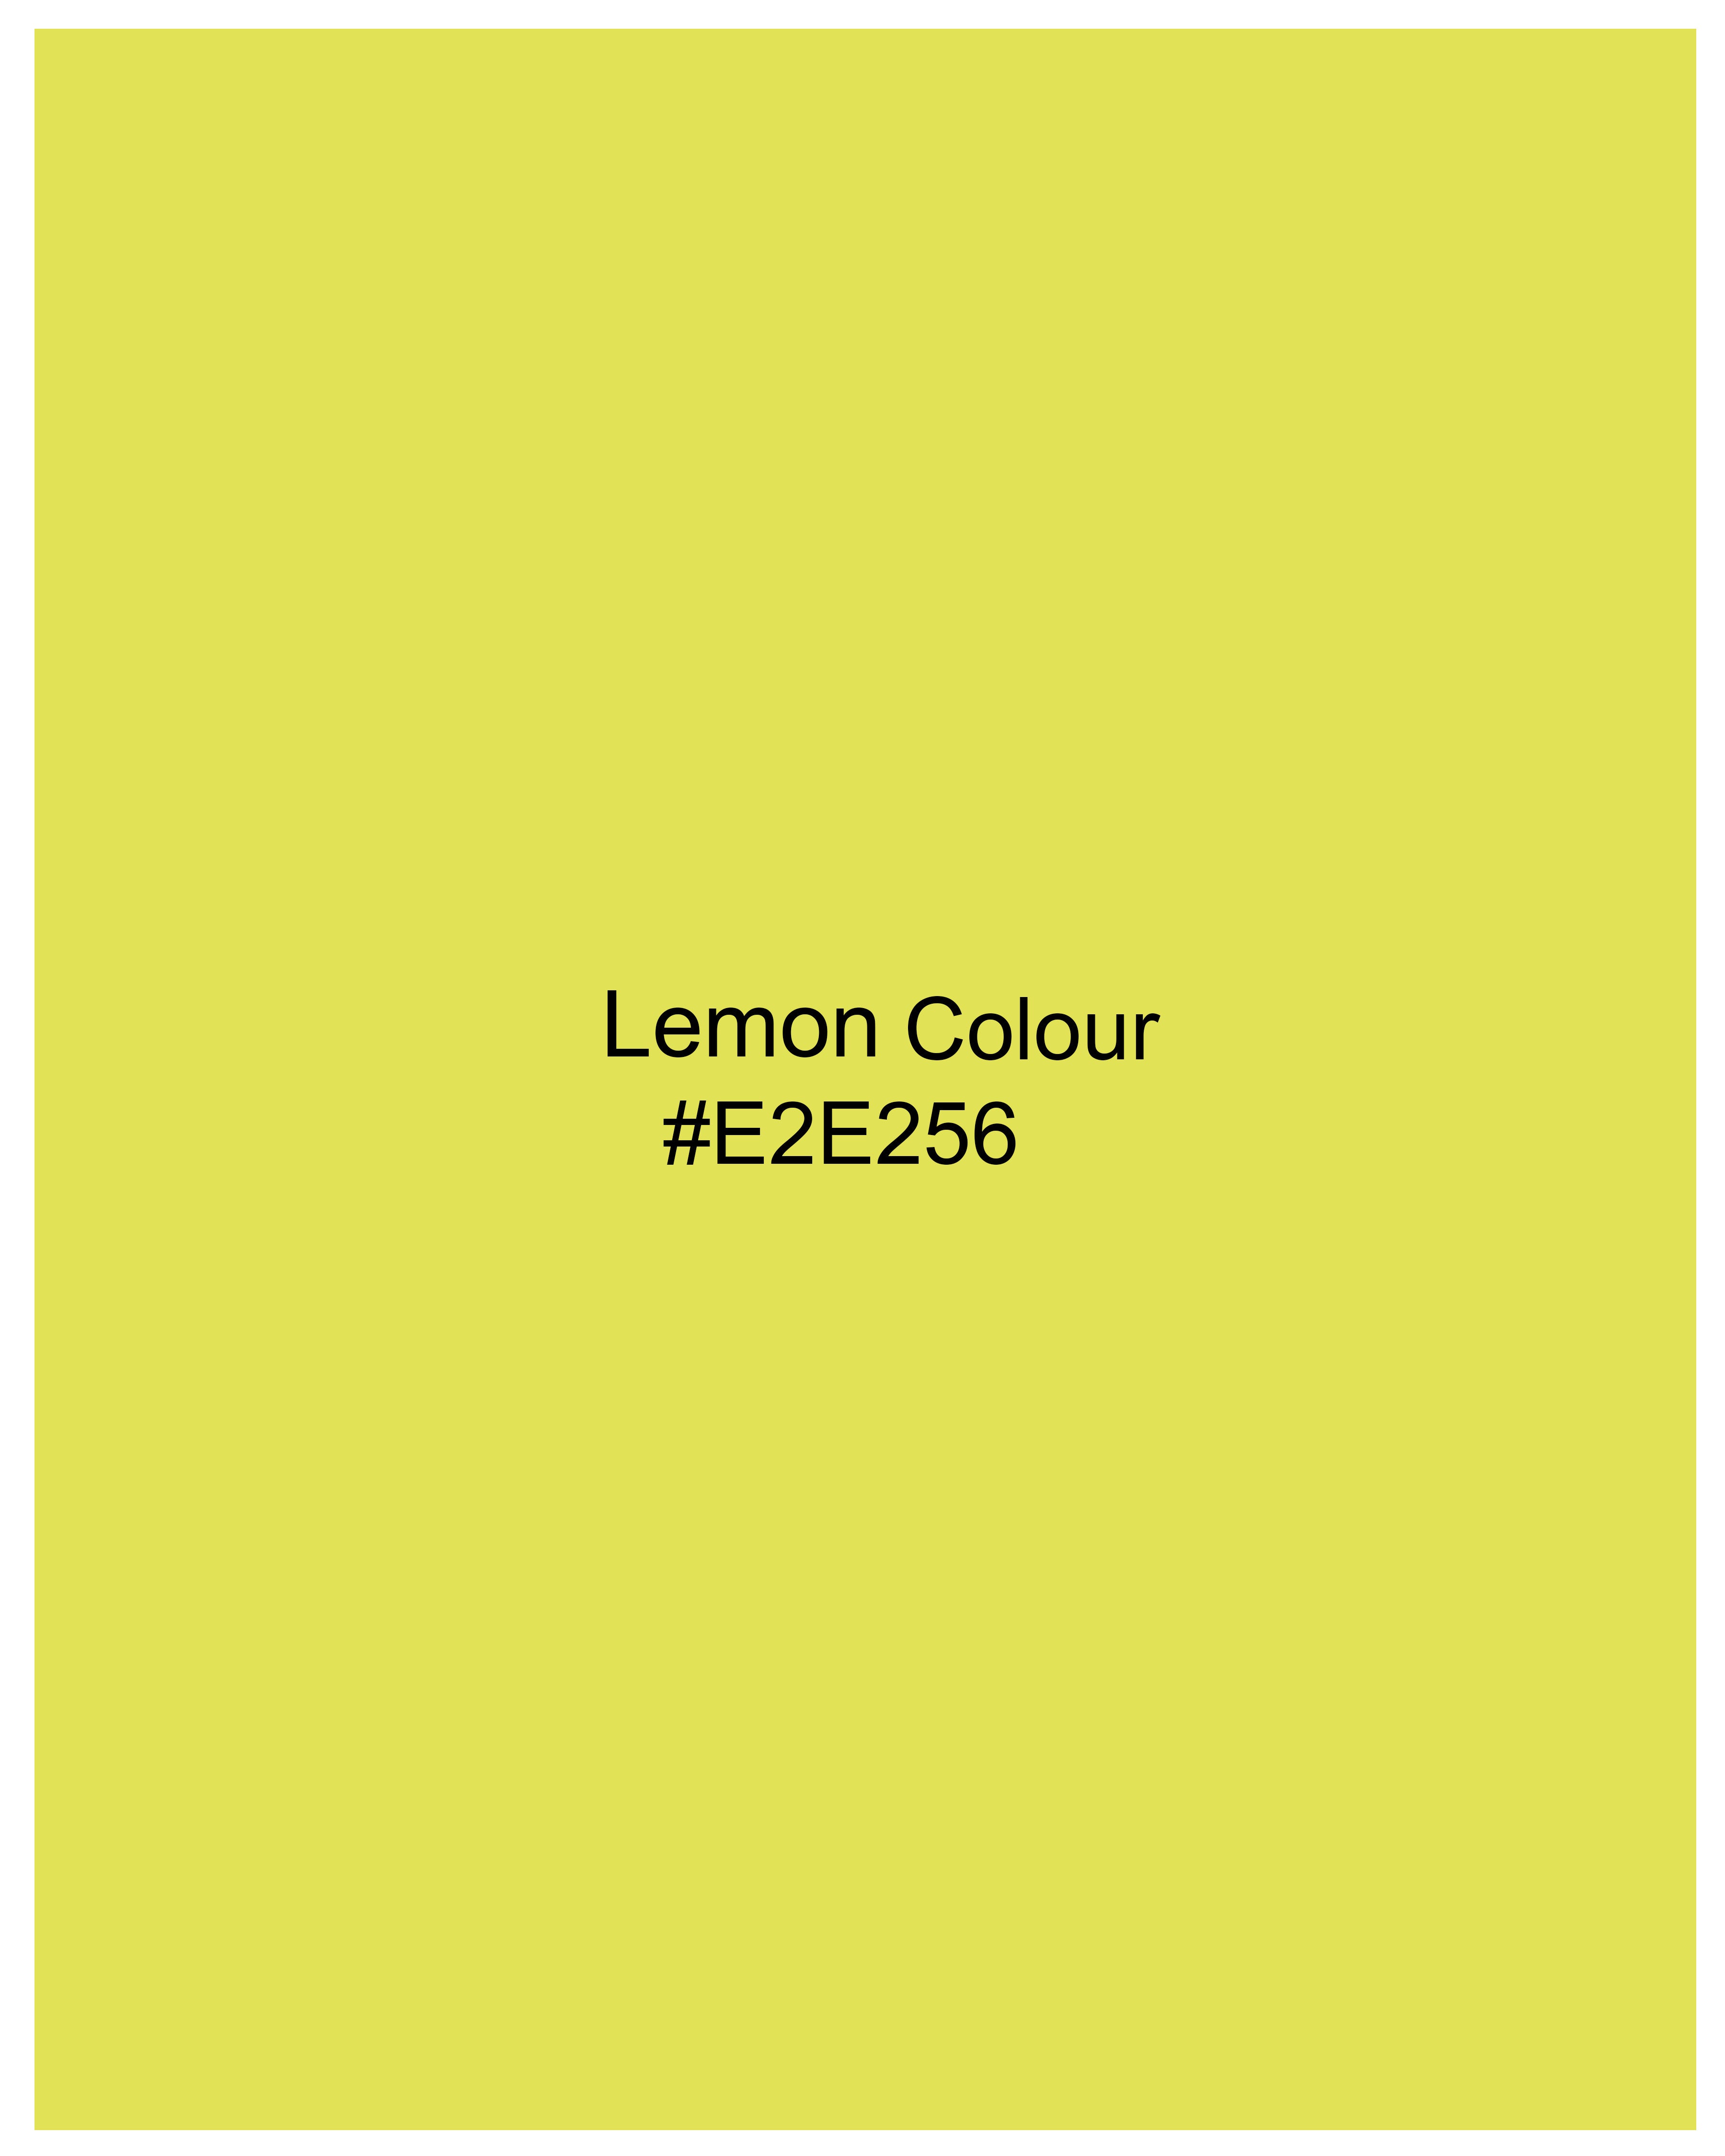 Lemon Yellow Mercerised Pique Polo TS876-S, TS876-M, TS876-L, TS876-XL, TS876-XXL